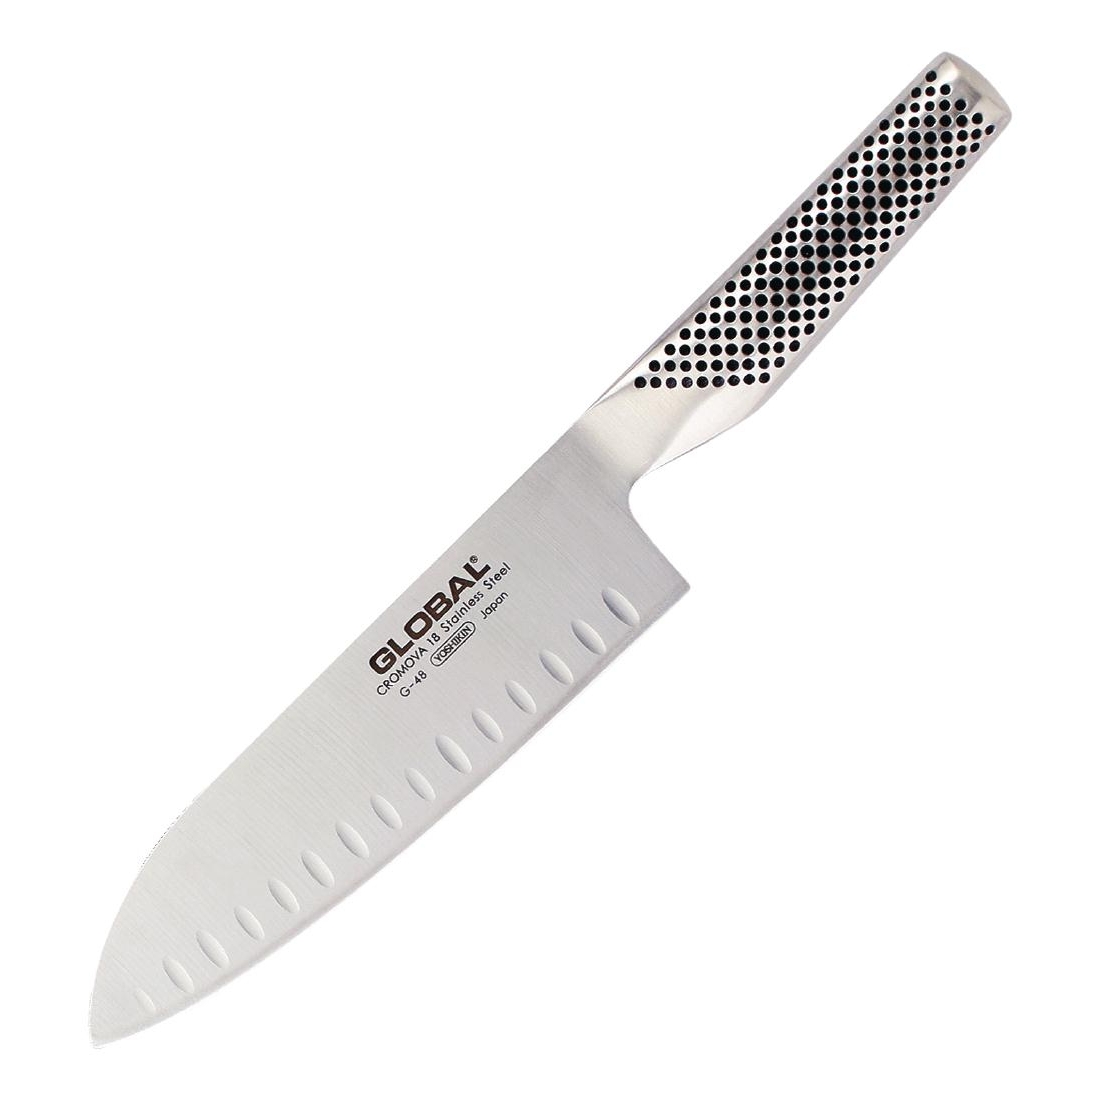 Global G 48 Santoku Fluted Knife 18cm